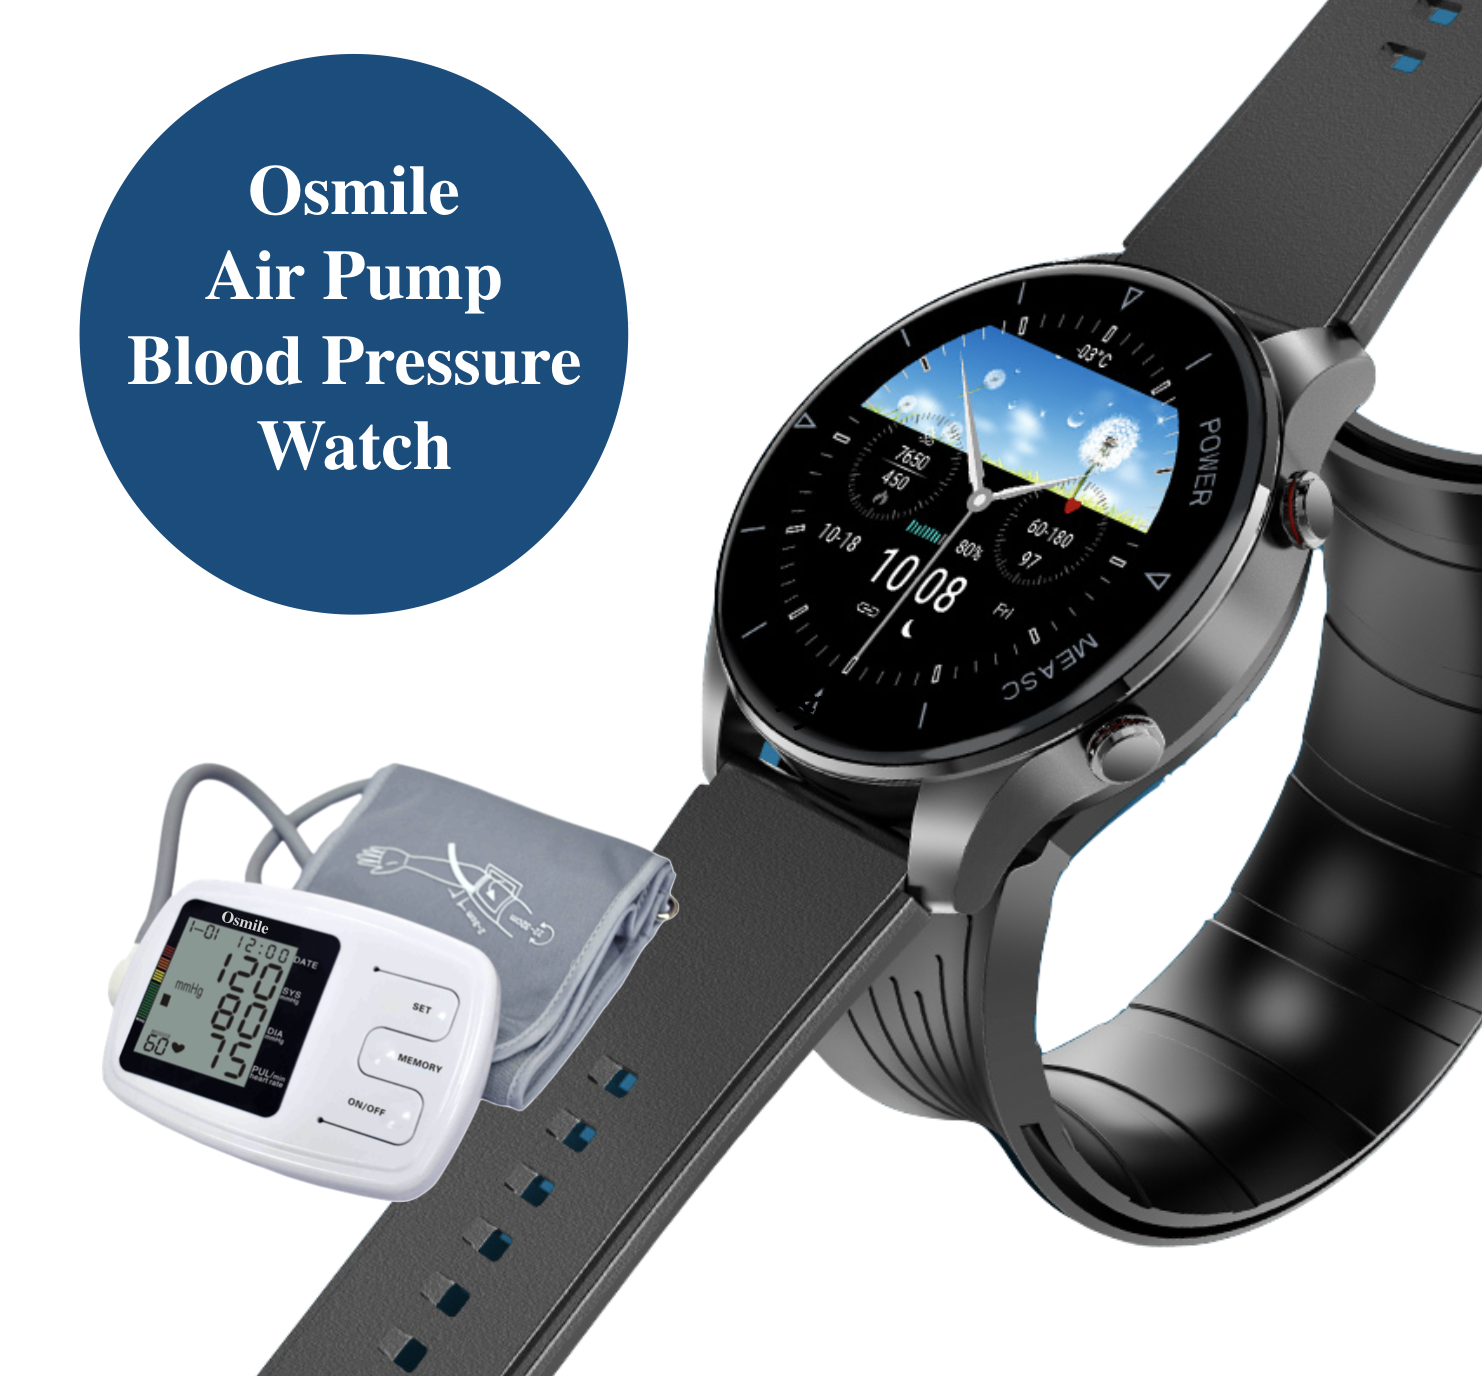 Osmile BP700 Air Pump Blood Pressure Watch